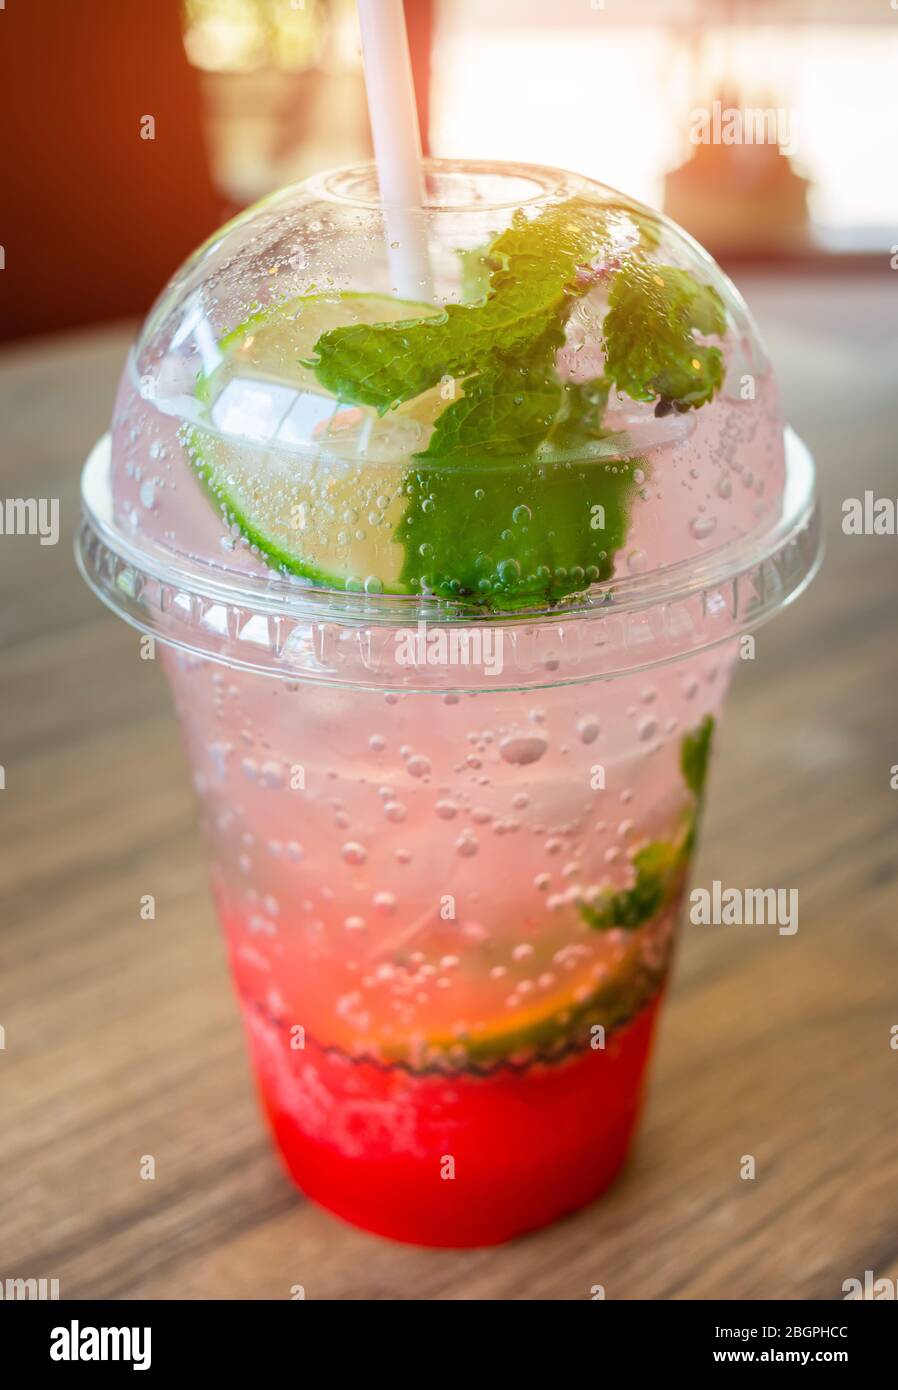 Ice soda sweet drink in plastic glass with in door low lighting. Stock Photo